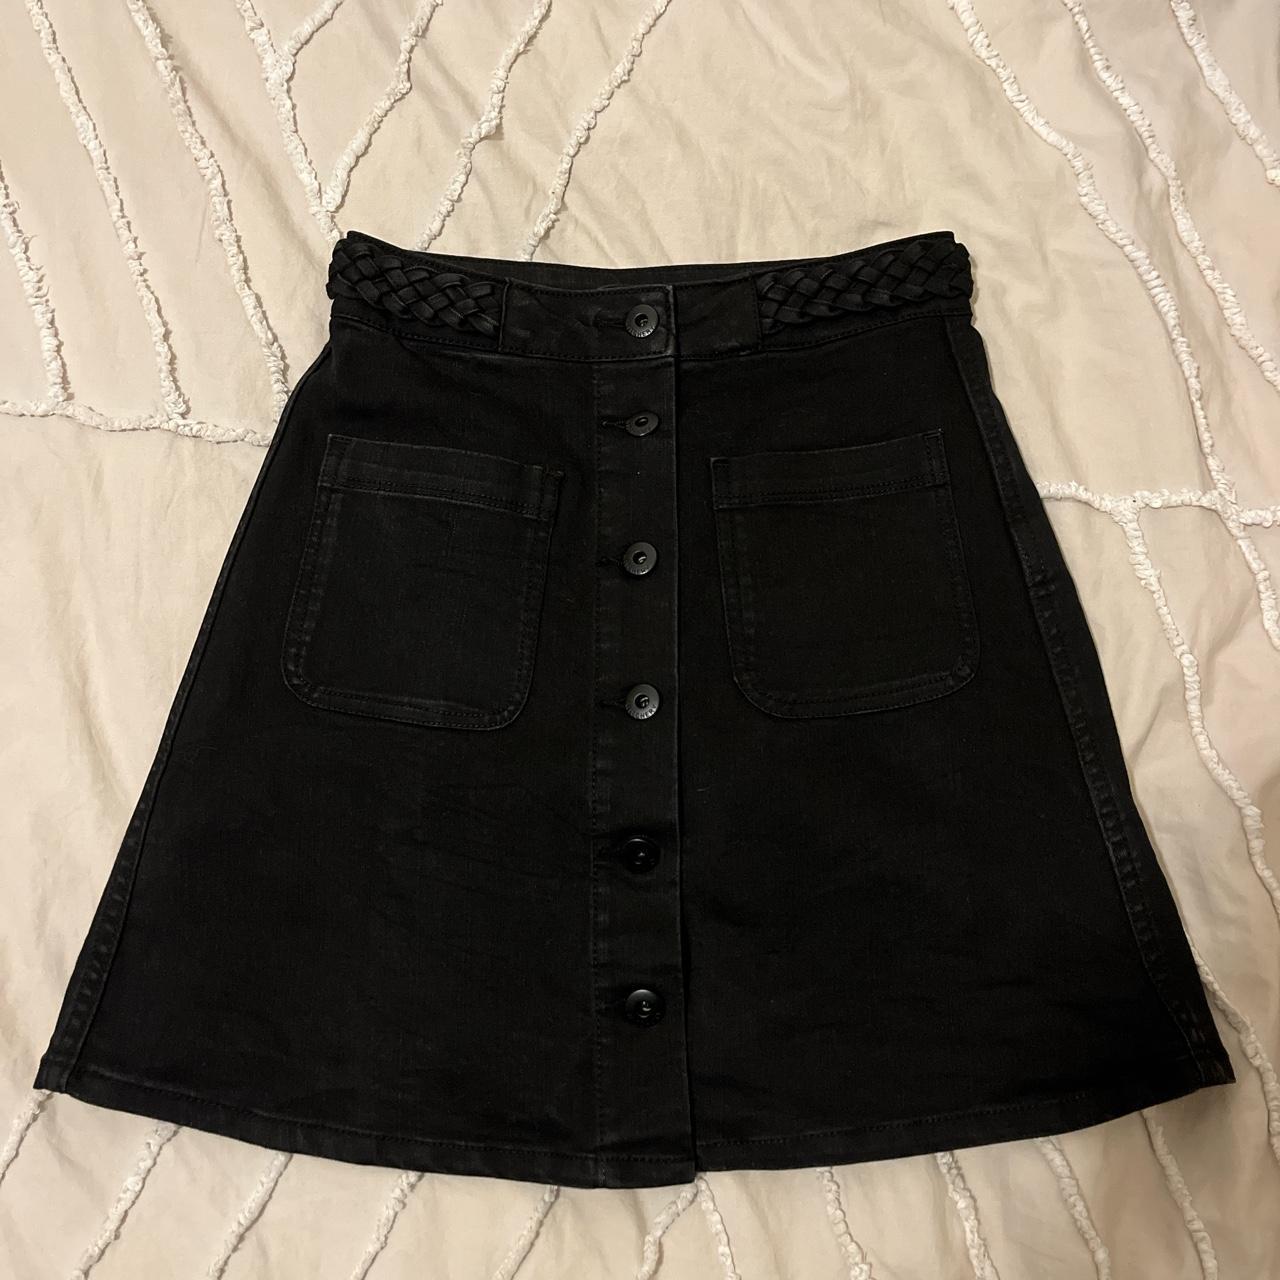 Witchery Black Denim skirt Plat waist detail and... - Depop